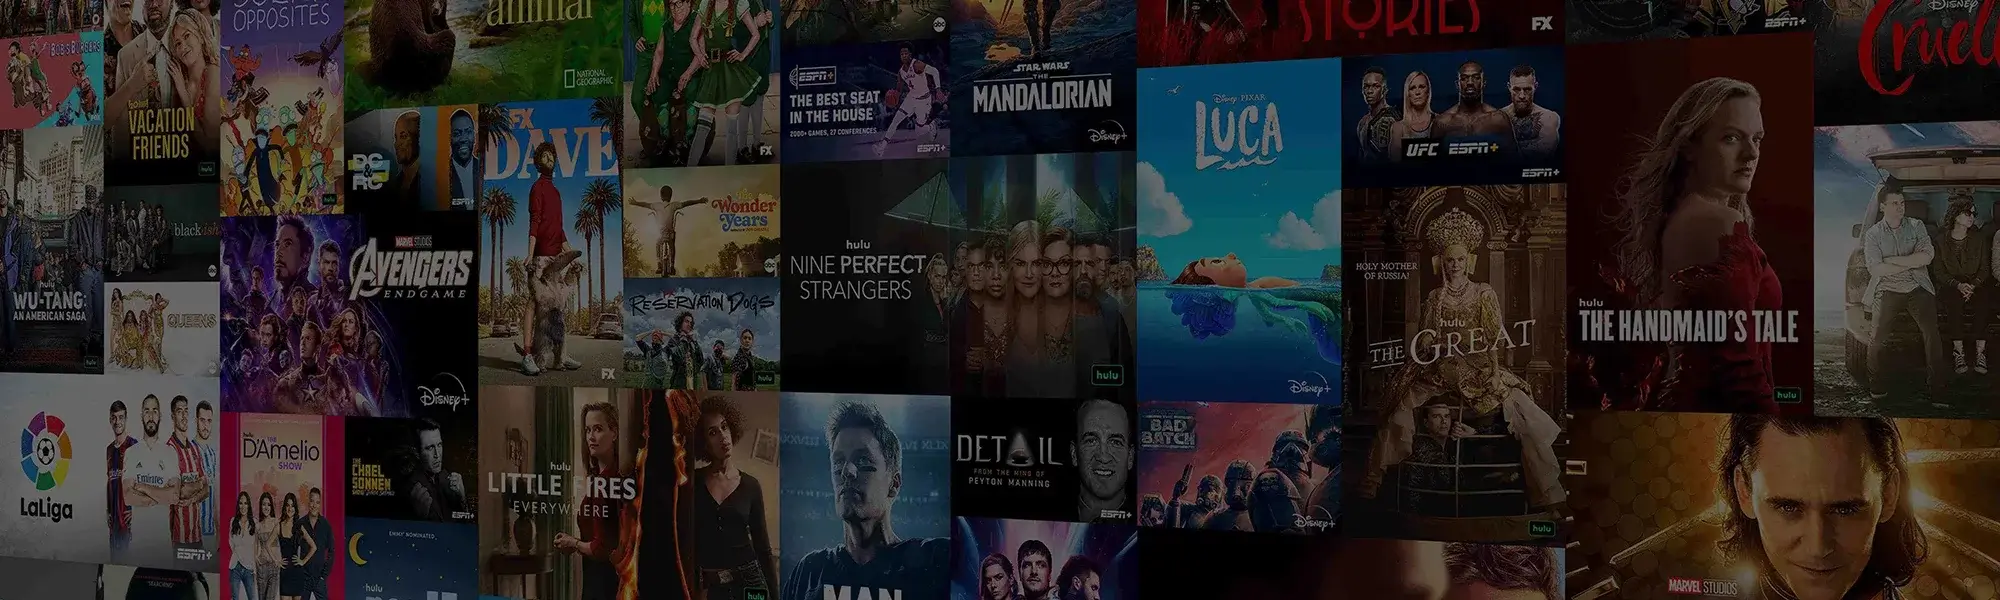 Hulu - Stream Movies, Series, & Original Shows | Astound Broadband ...